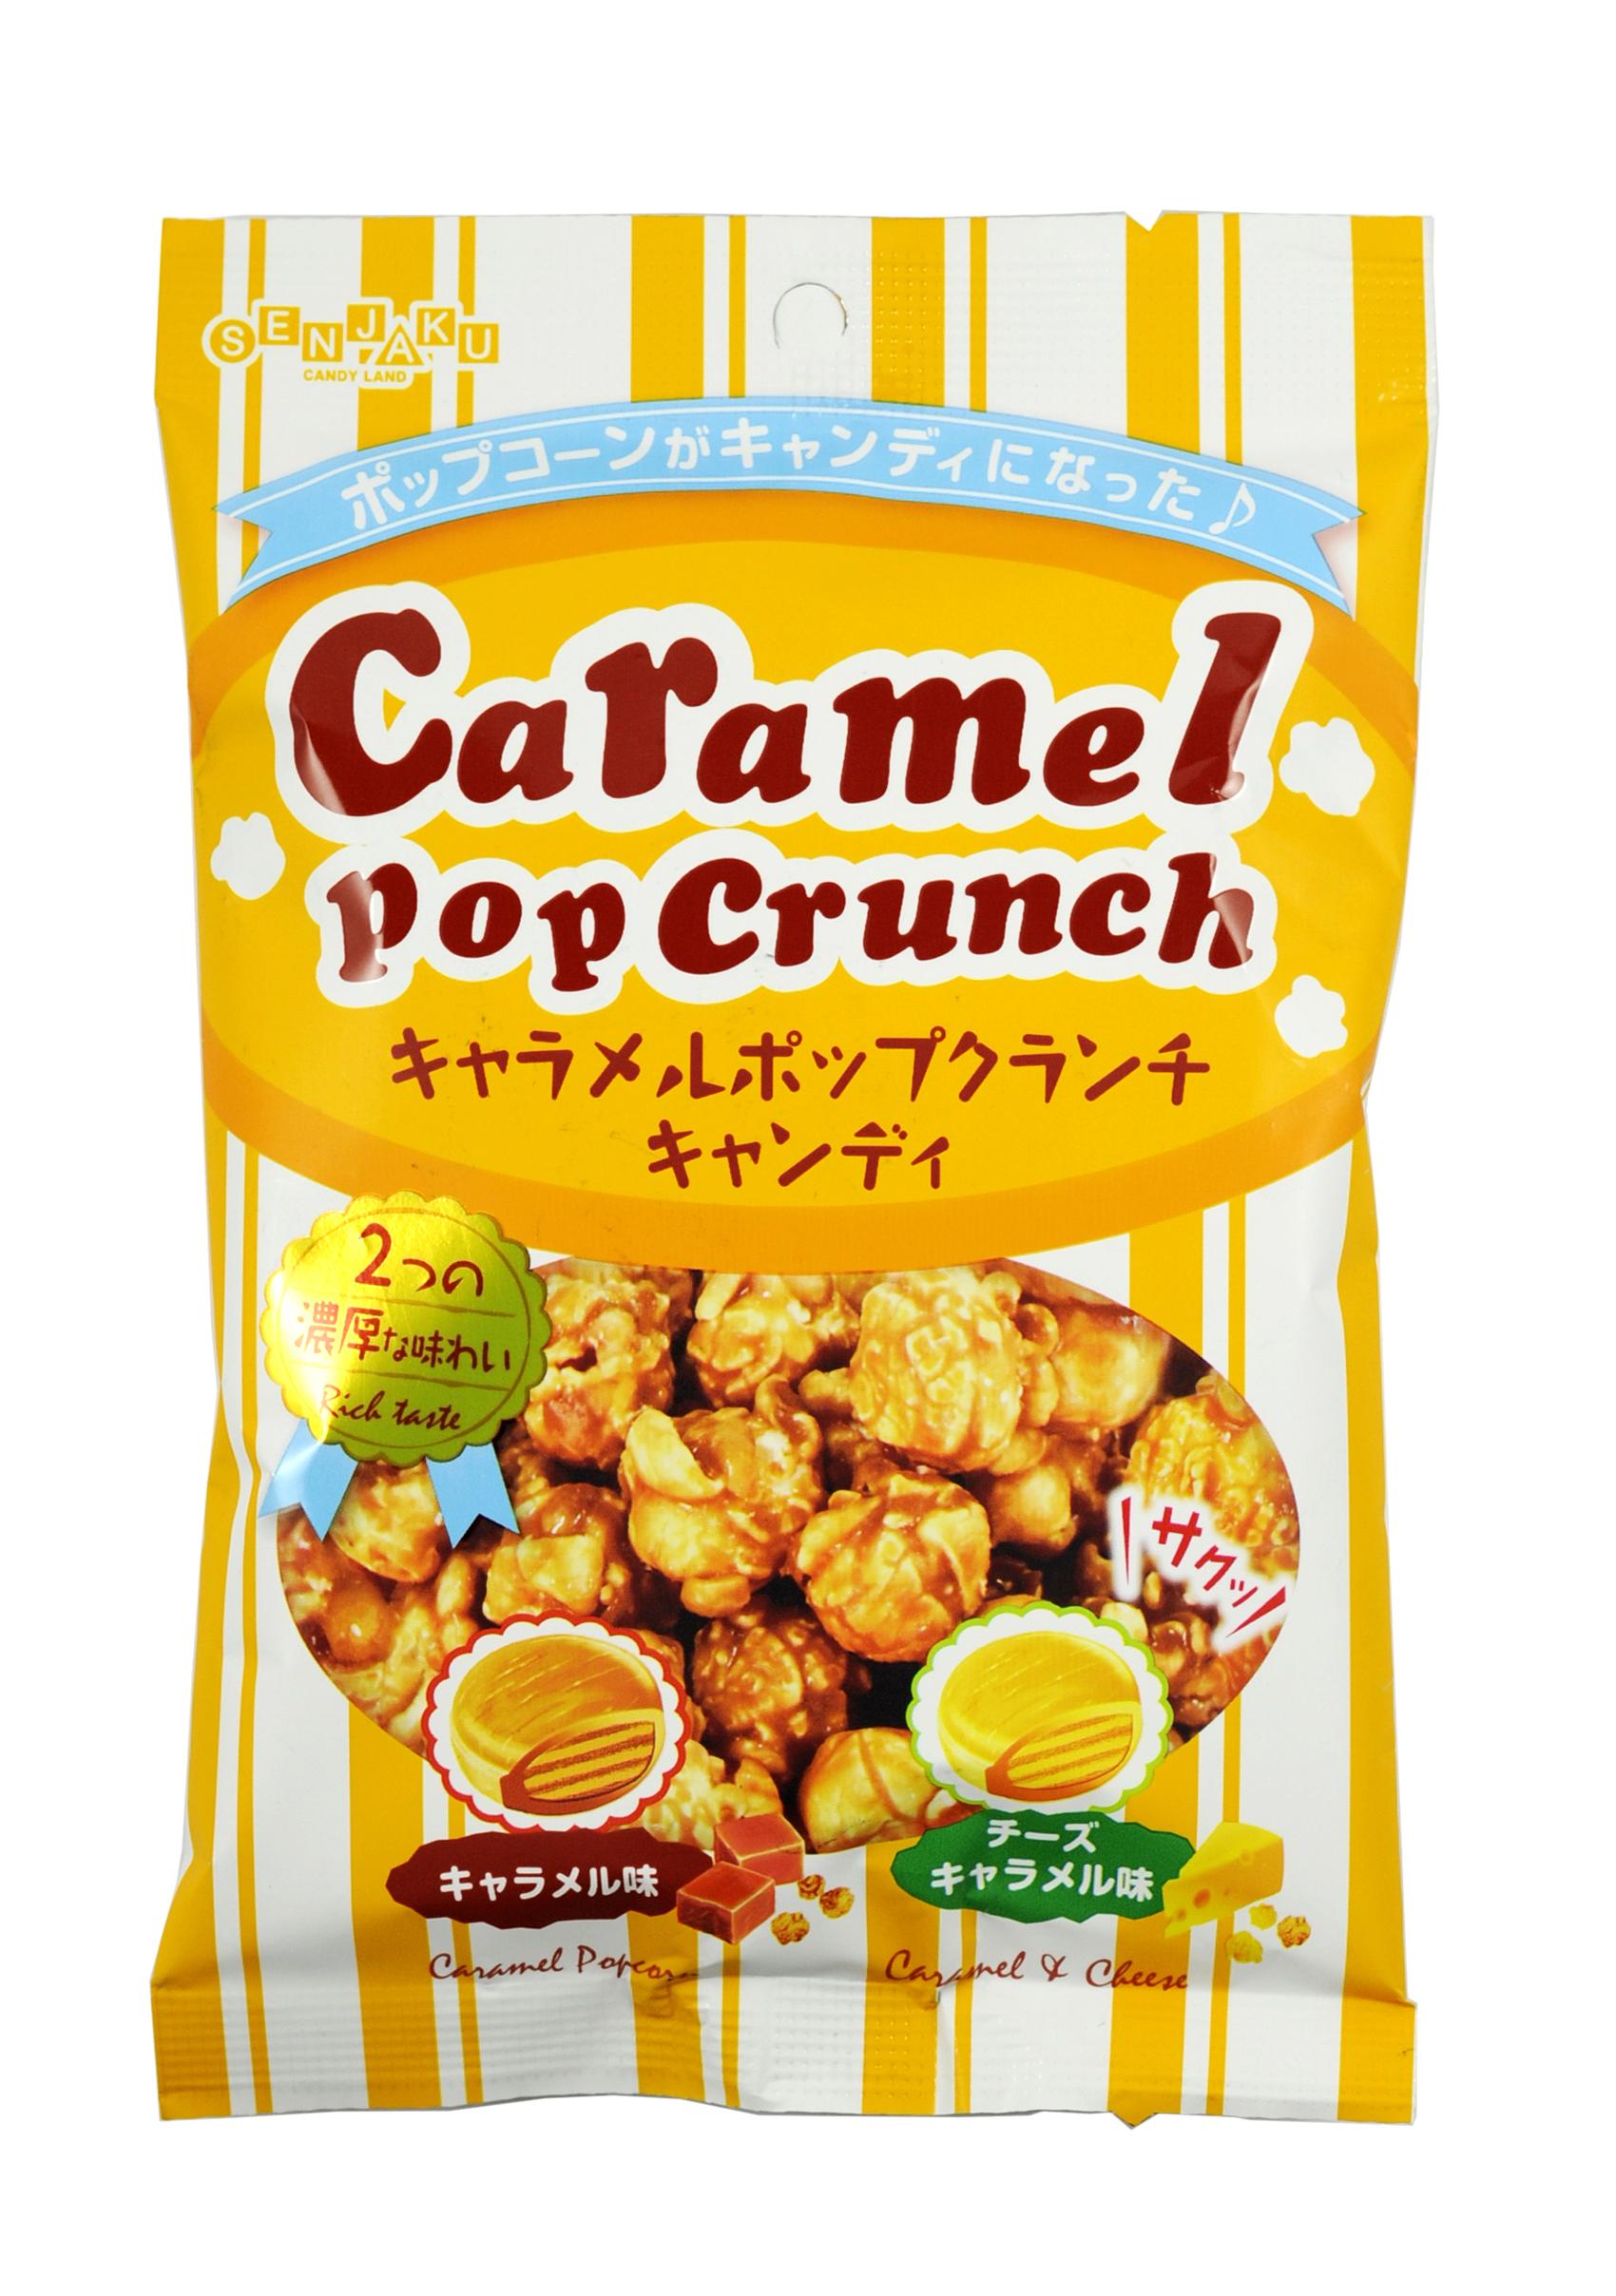 日本原装进口零食品 扇雀饴 焦糖爆米花味球糖 76g